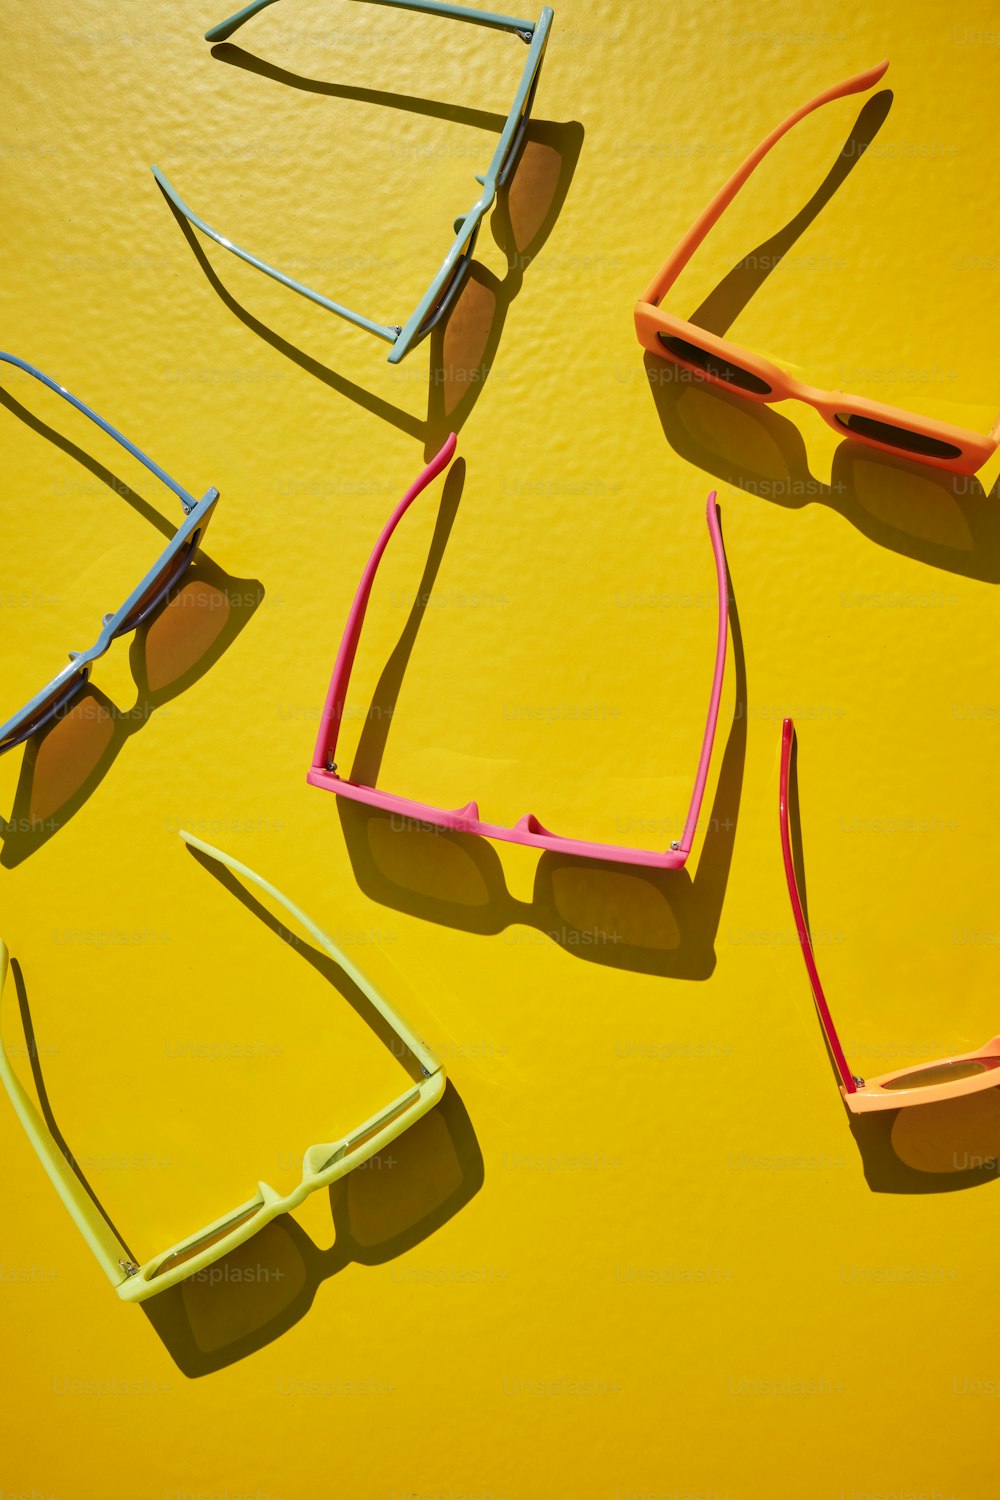 Cuatro pares de gafas de sol sobre una superficie amarilla